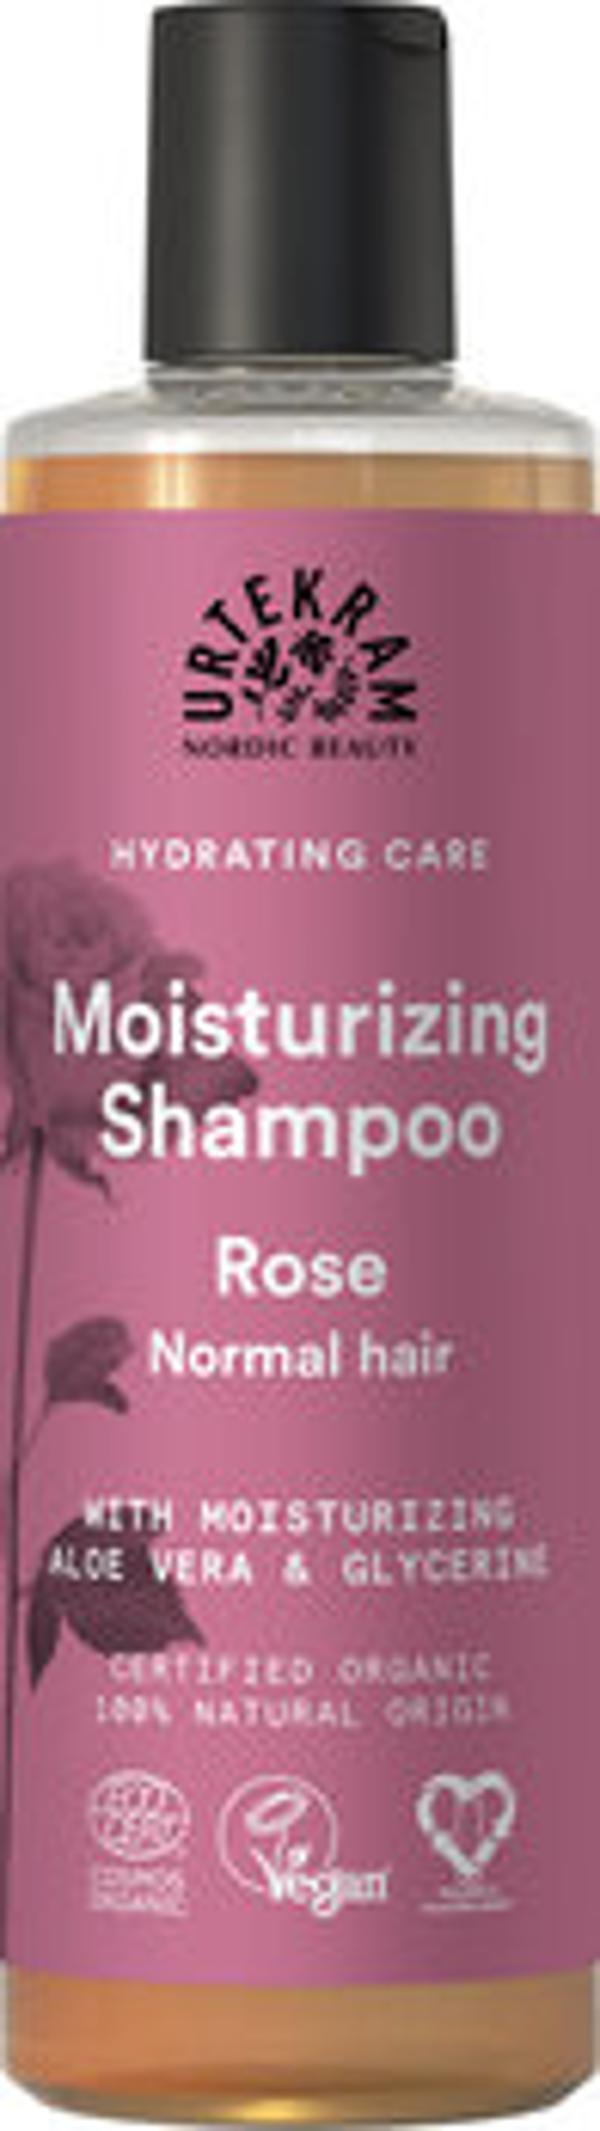 Produktfoto zu Rosen Shampoo für normales Haar 250ml